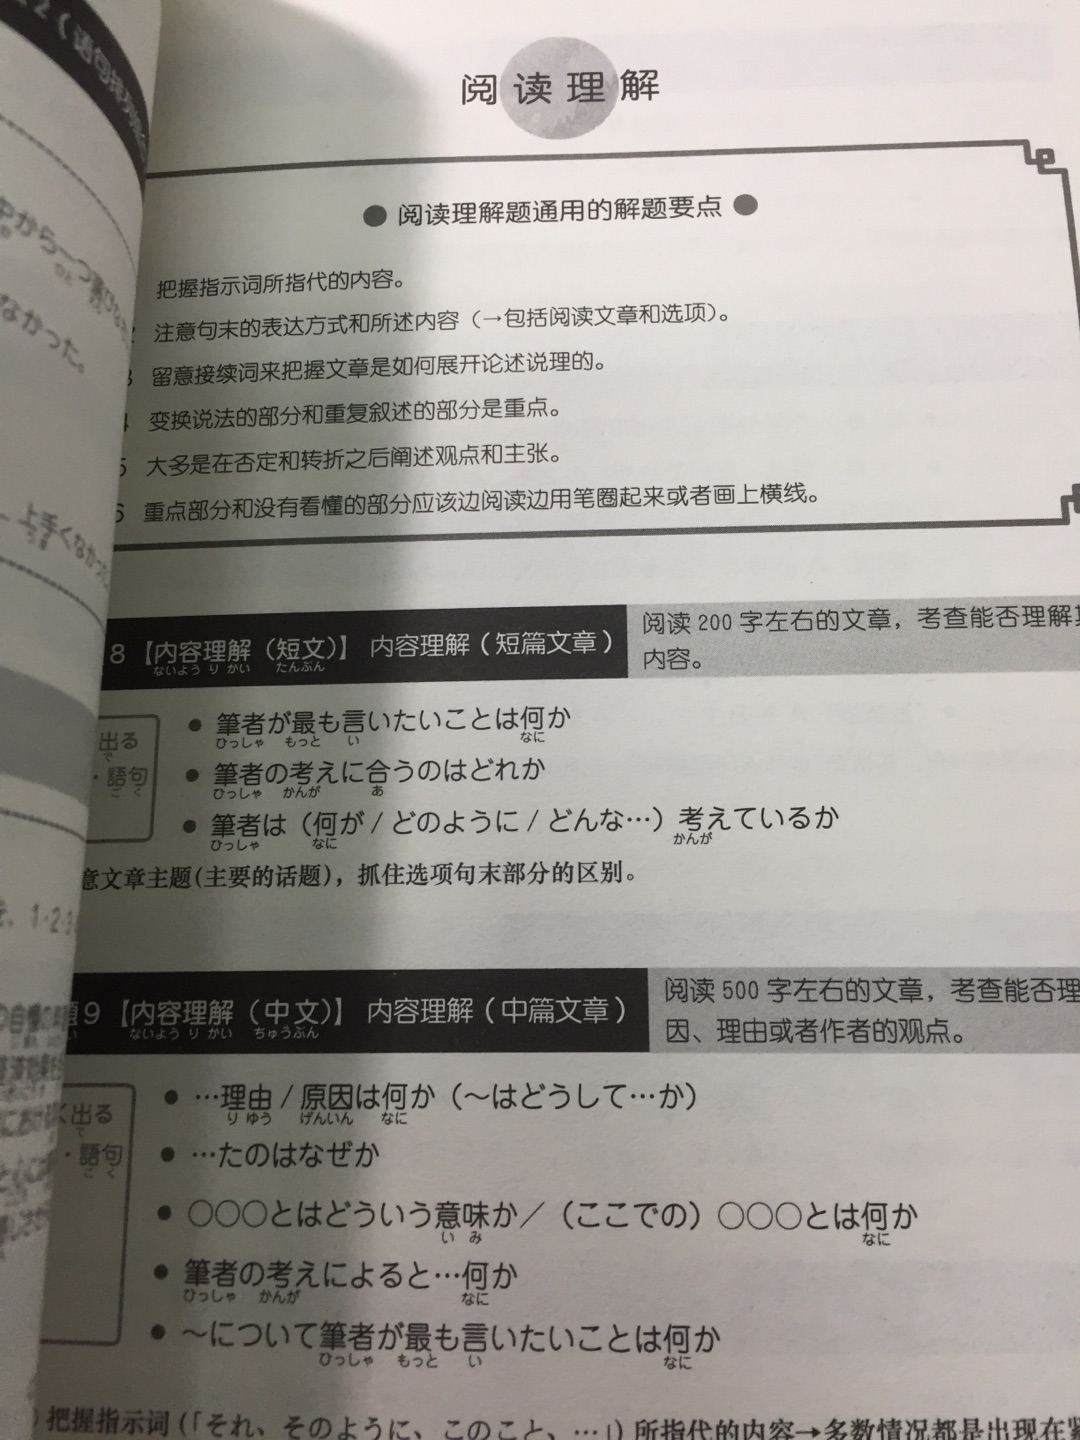 新完全掌握日语能力考试 N1 (共7册), 这套丛书还有 《新完全掌握日语能力考试N1级词汇》,《新完全掌握日语能力考试N1级阅读》,《新完全掌握日语能力考试 N1级 听力》,《新完全掌握日语能力考试 N1级 汉字》,《新完全掌握日语能力考试N1级语法》 等。